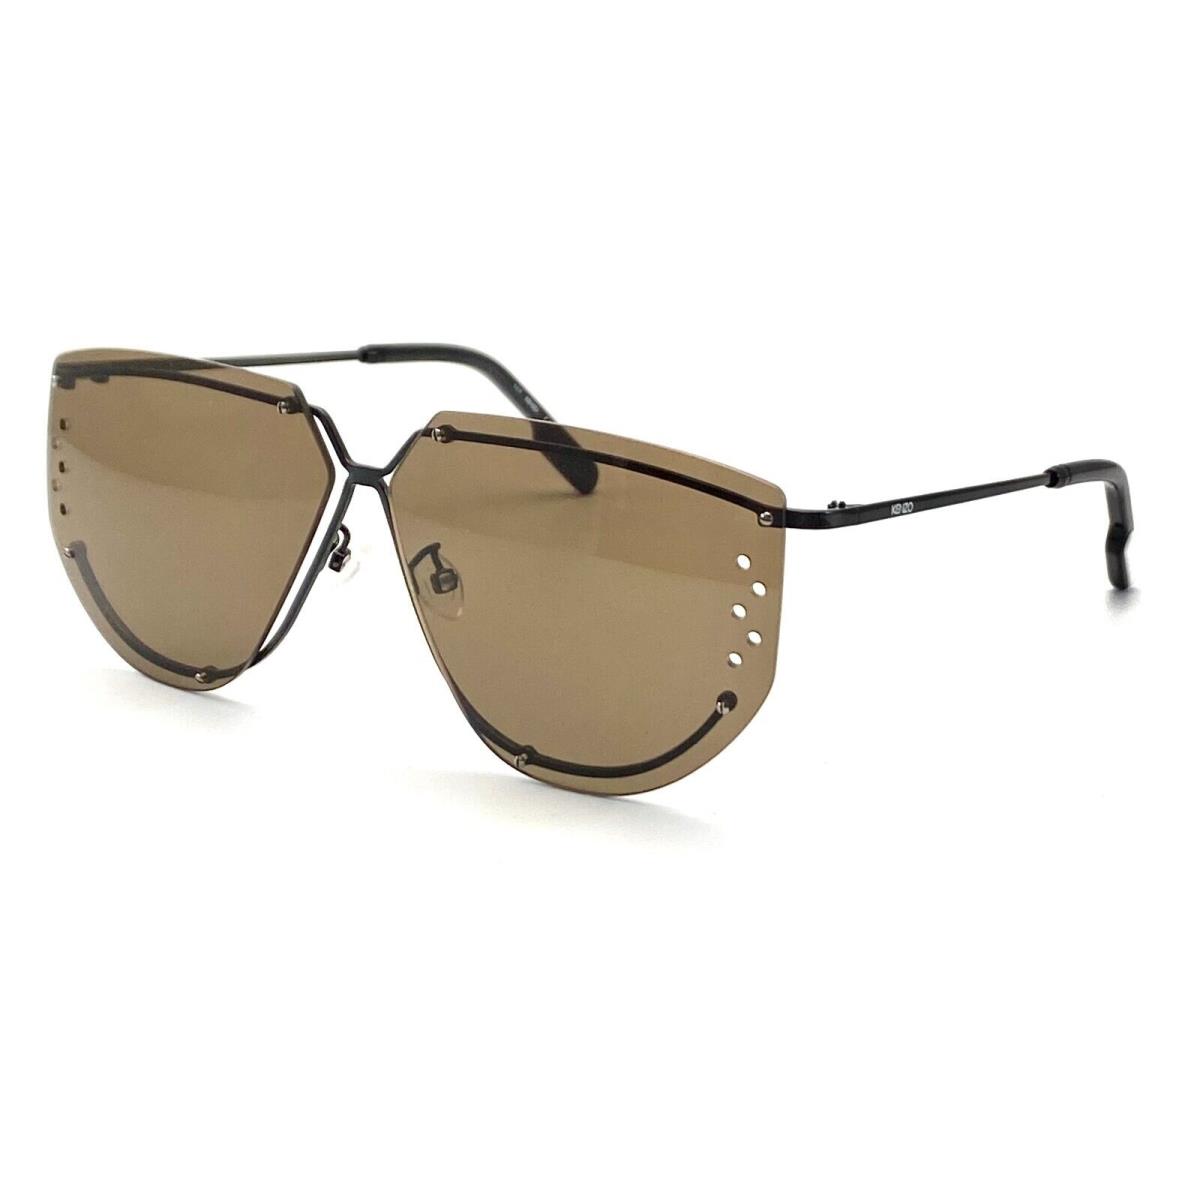 Kenzo Paris KZ40057U/S 01E Black Sunglasses 62-10 145 W/case - Black Frame, Brown Lens